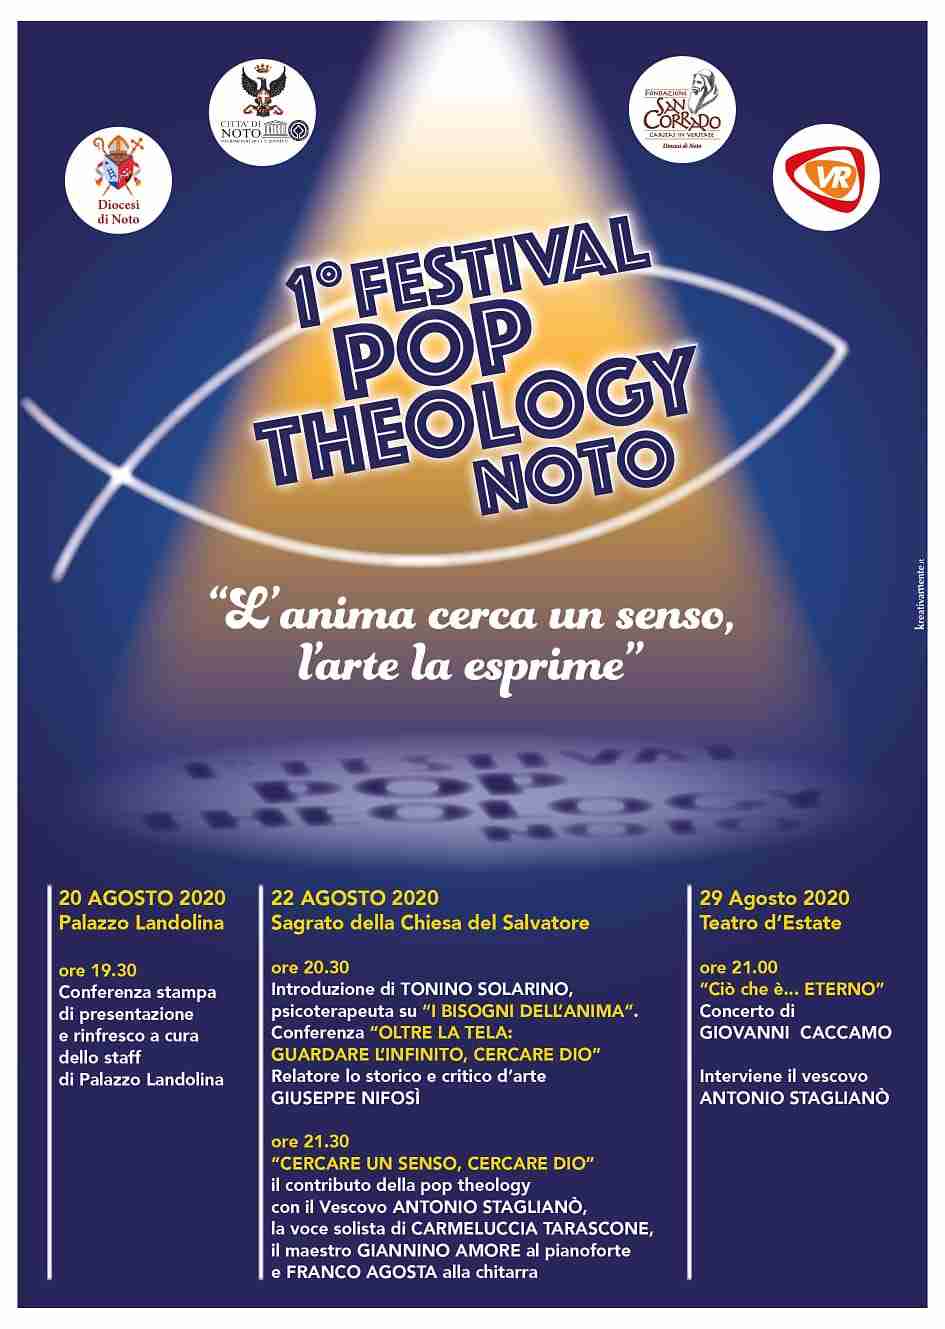 Il 22 e il 29 agosto Primo Festival di Pop Theology a Noto: “L’anima cerca un senso, l’arte la esprime”